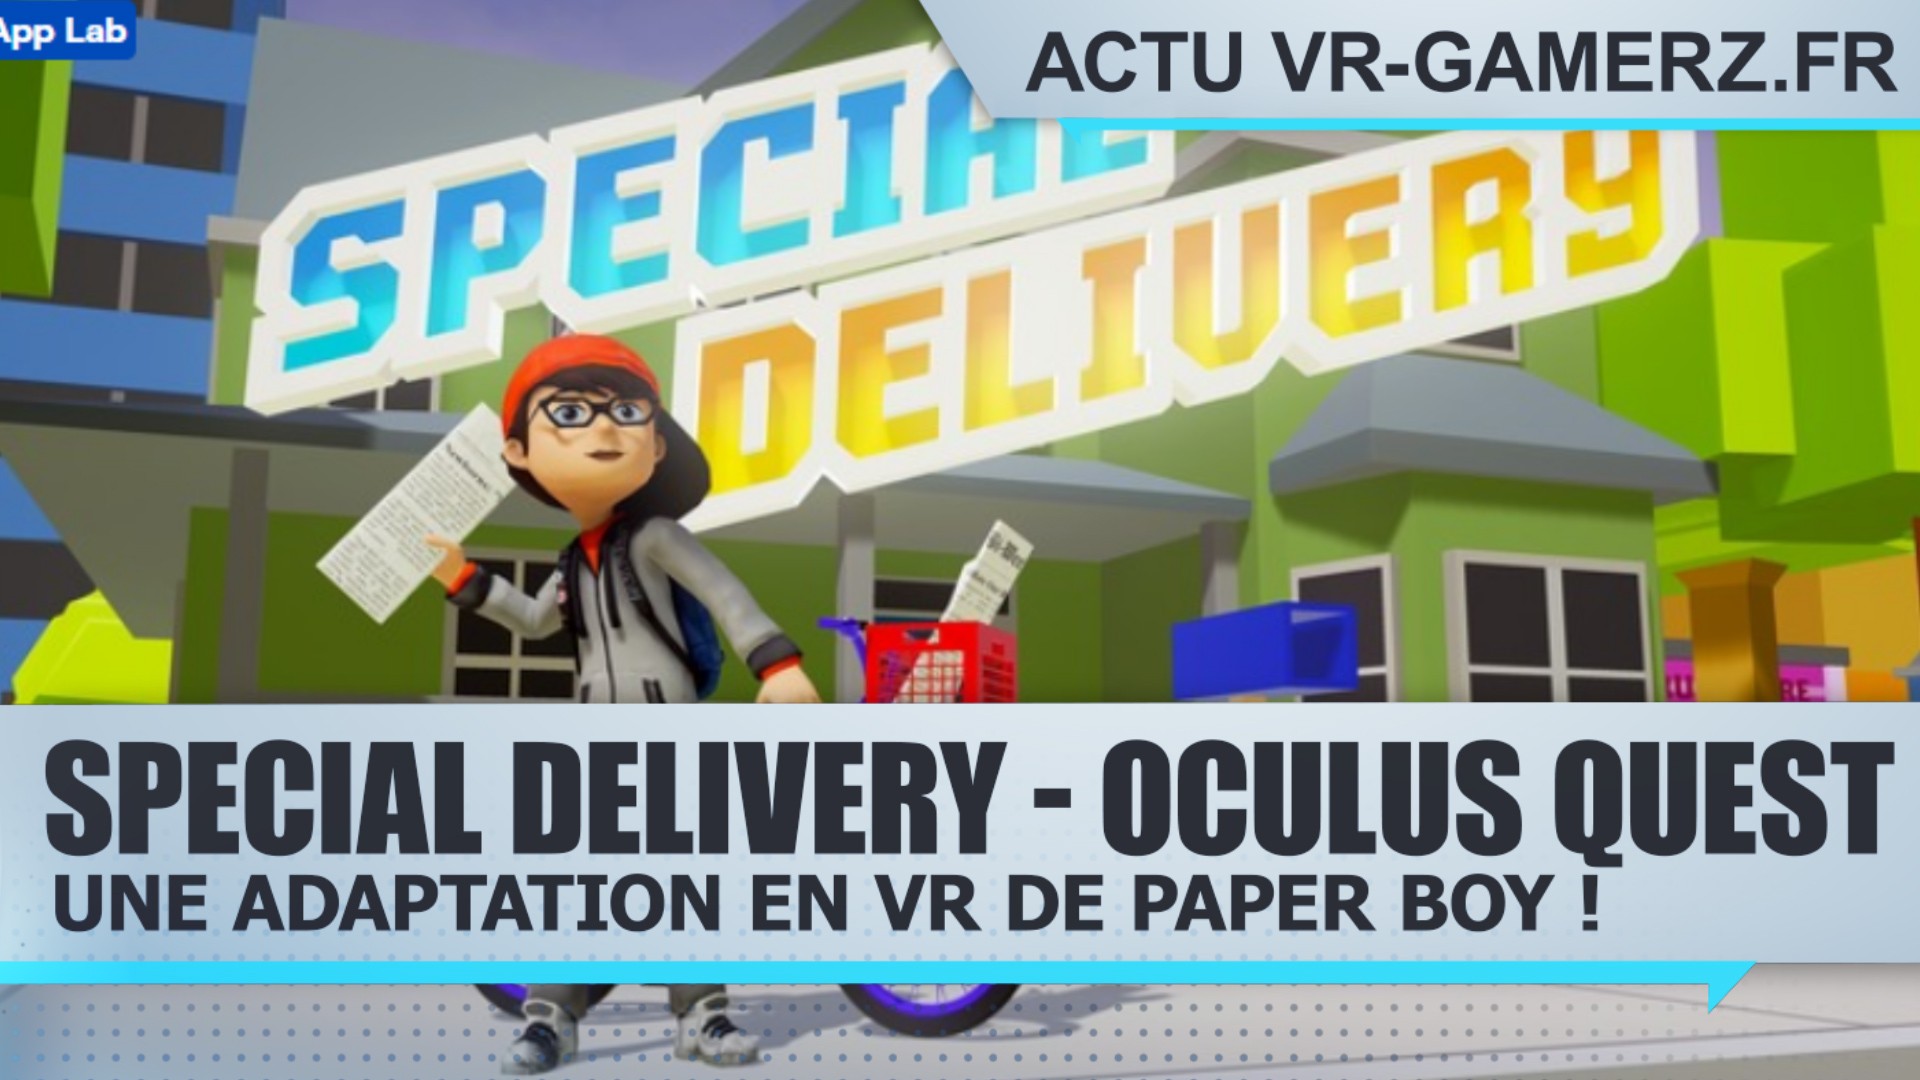 Special Delivery – Oculus quest : Une adaptation en VR de paper boy !